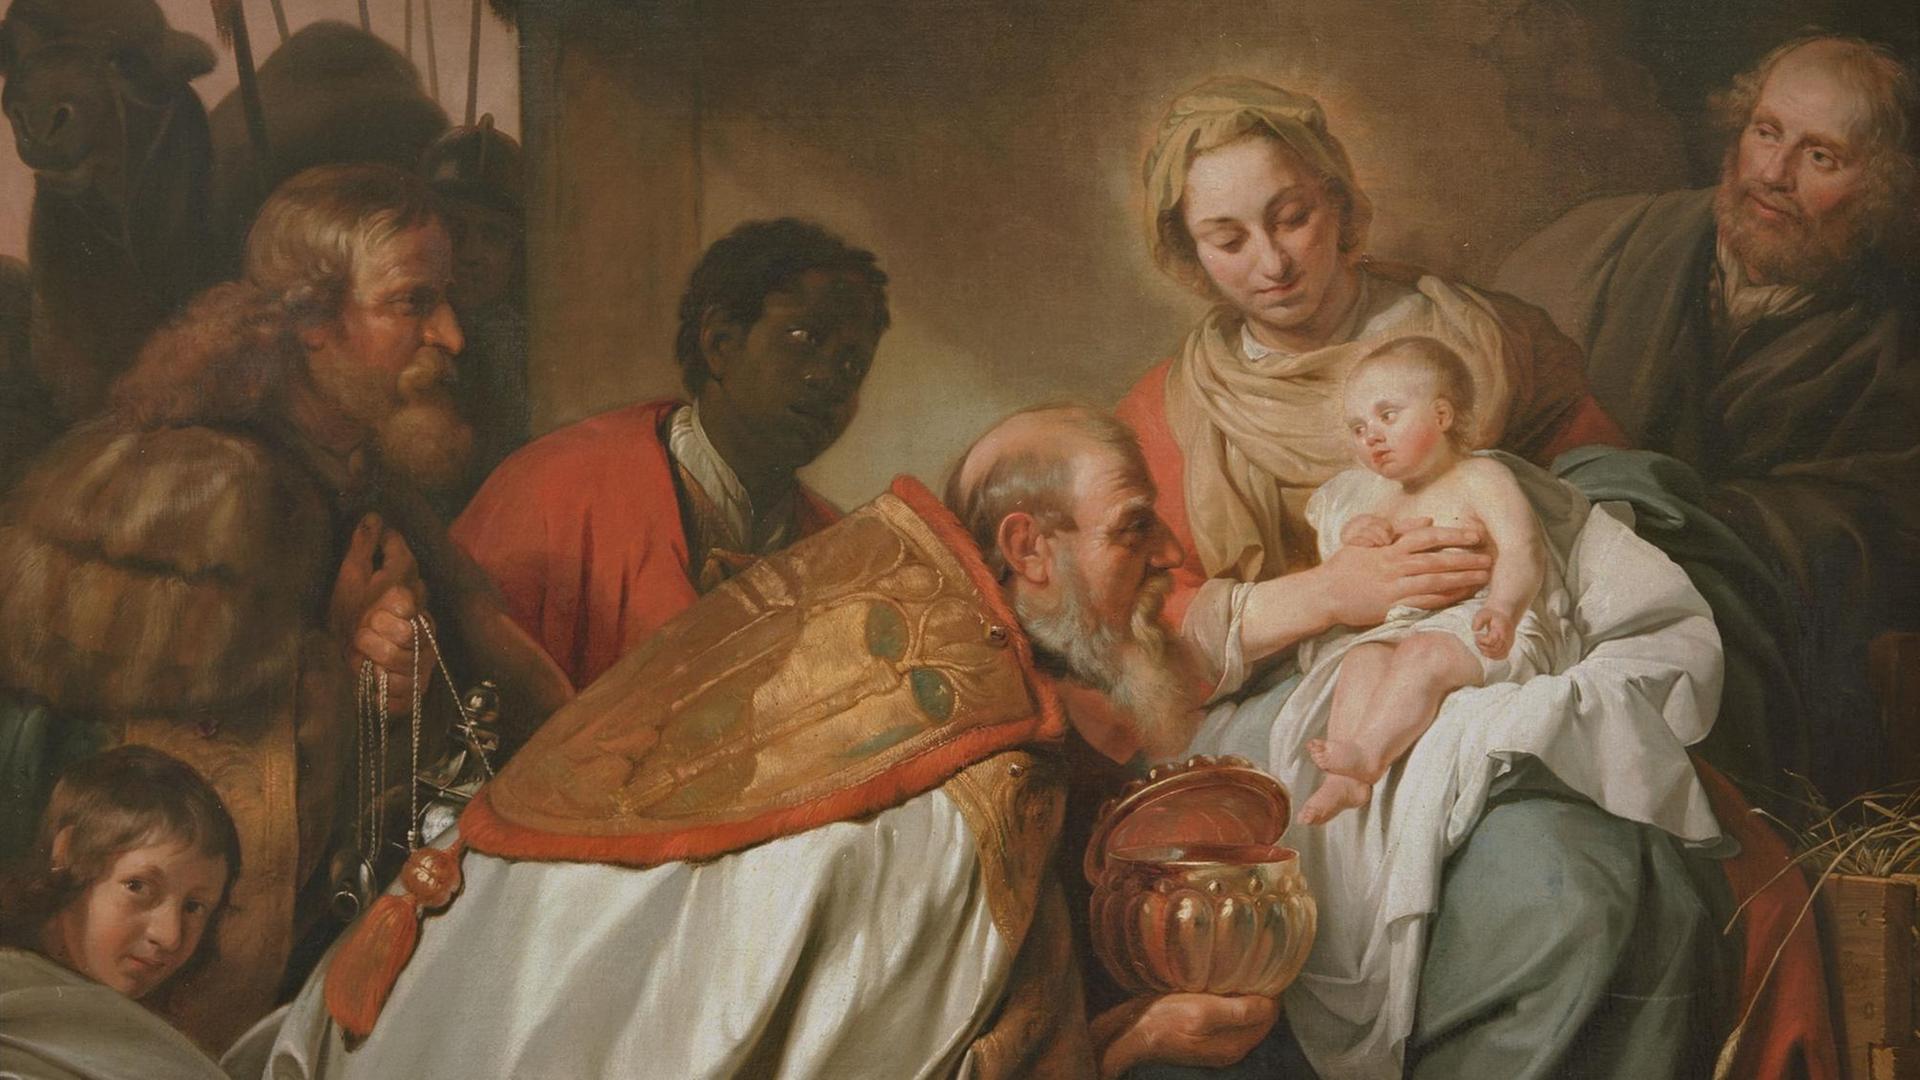 Das Ölgemälde von J. de Bray zeigt die Heiligen Drei Könige, die sich vor dem Jesuskind verneigen.